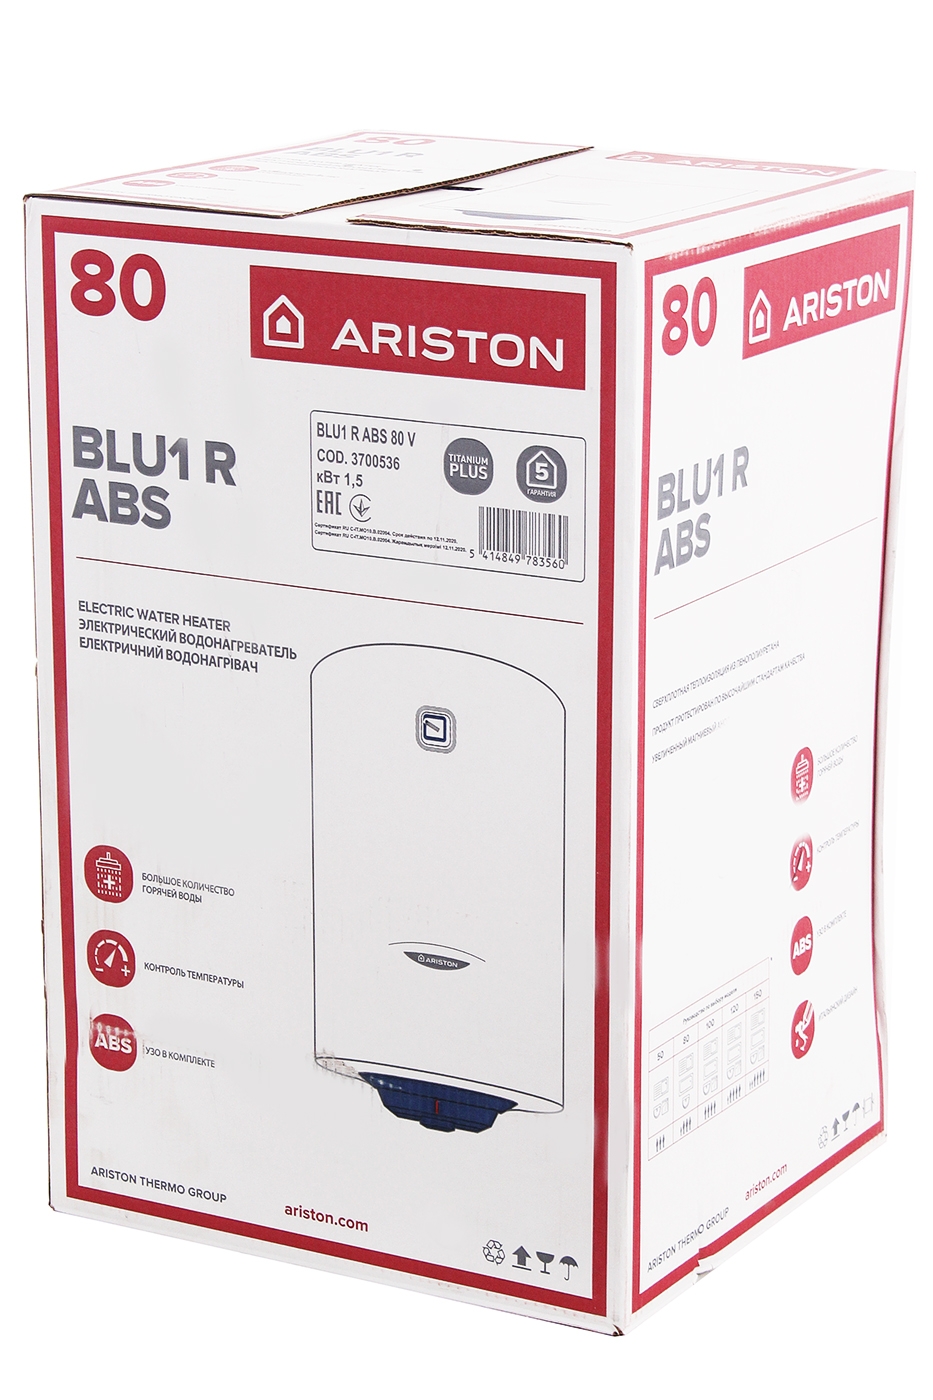 Ariston 40 slim. Ariston blu1 r 80. Ariston blu1 r ABS 80 V. Ariston blu1 r ABS. Ariston blu1 r ABS 80 V Slim.